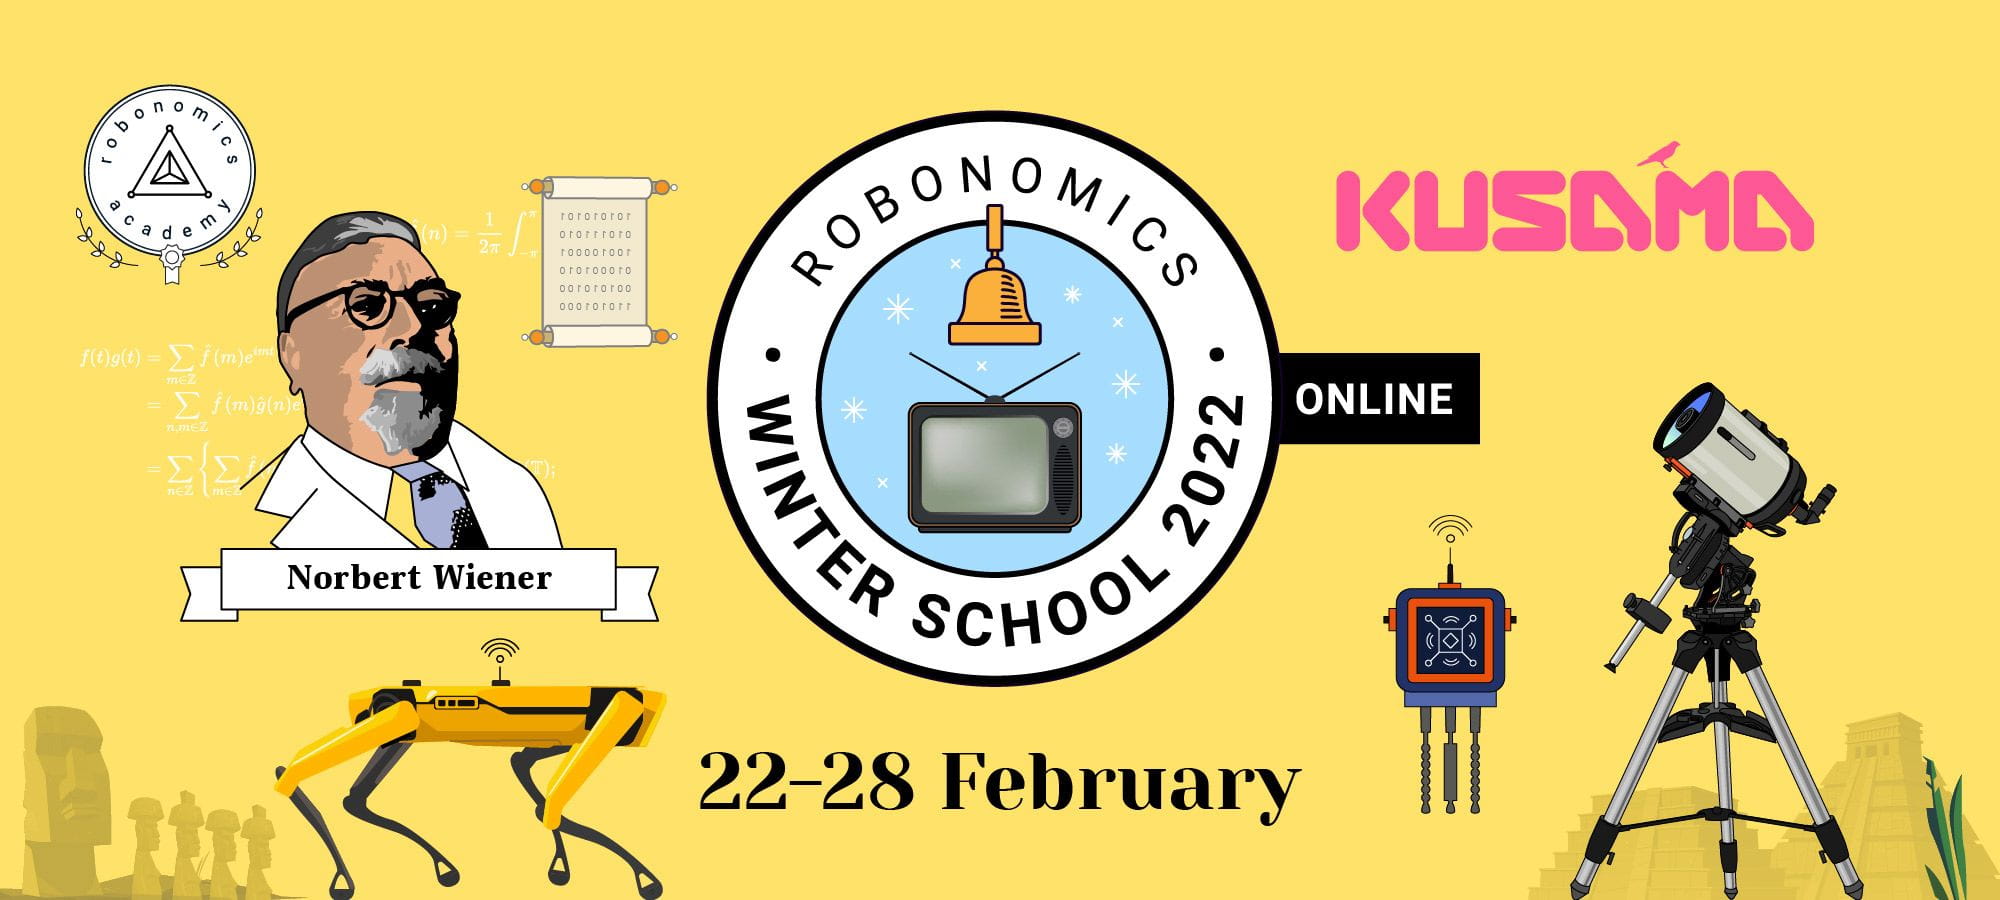 Schedule of the Winter School of Robonomics 2022